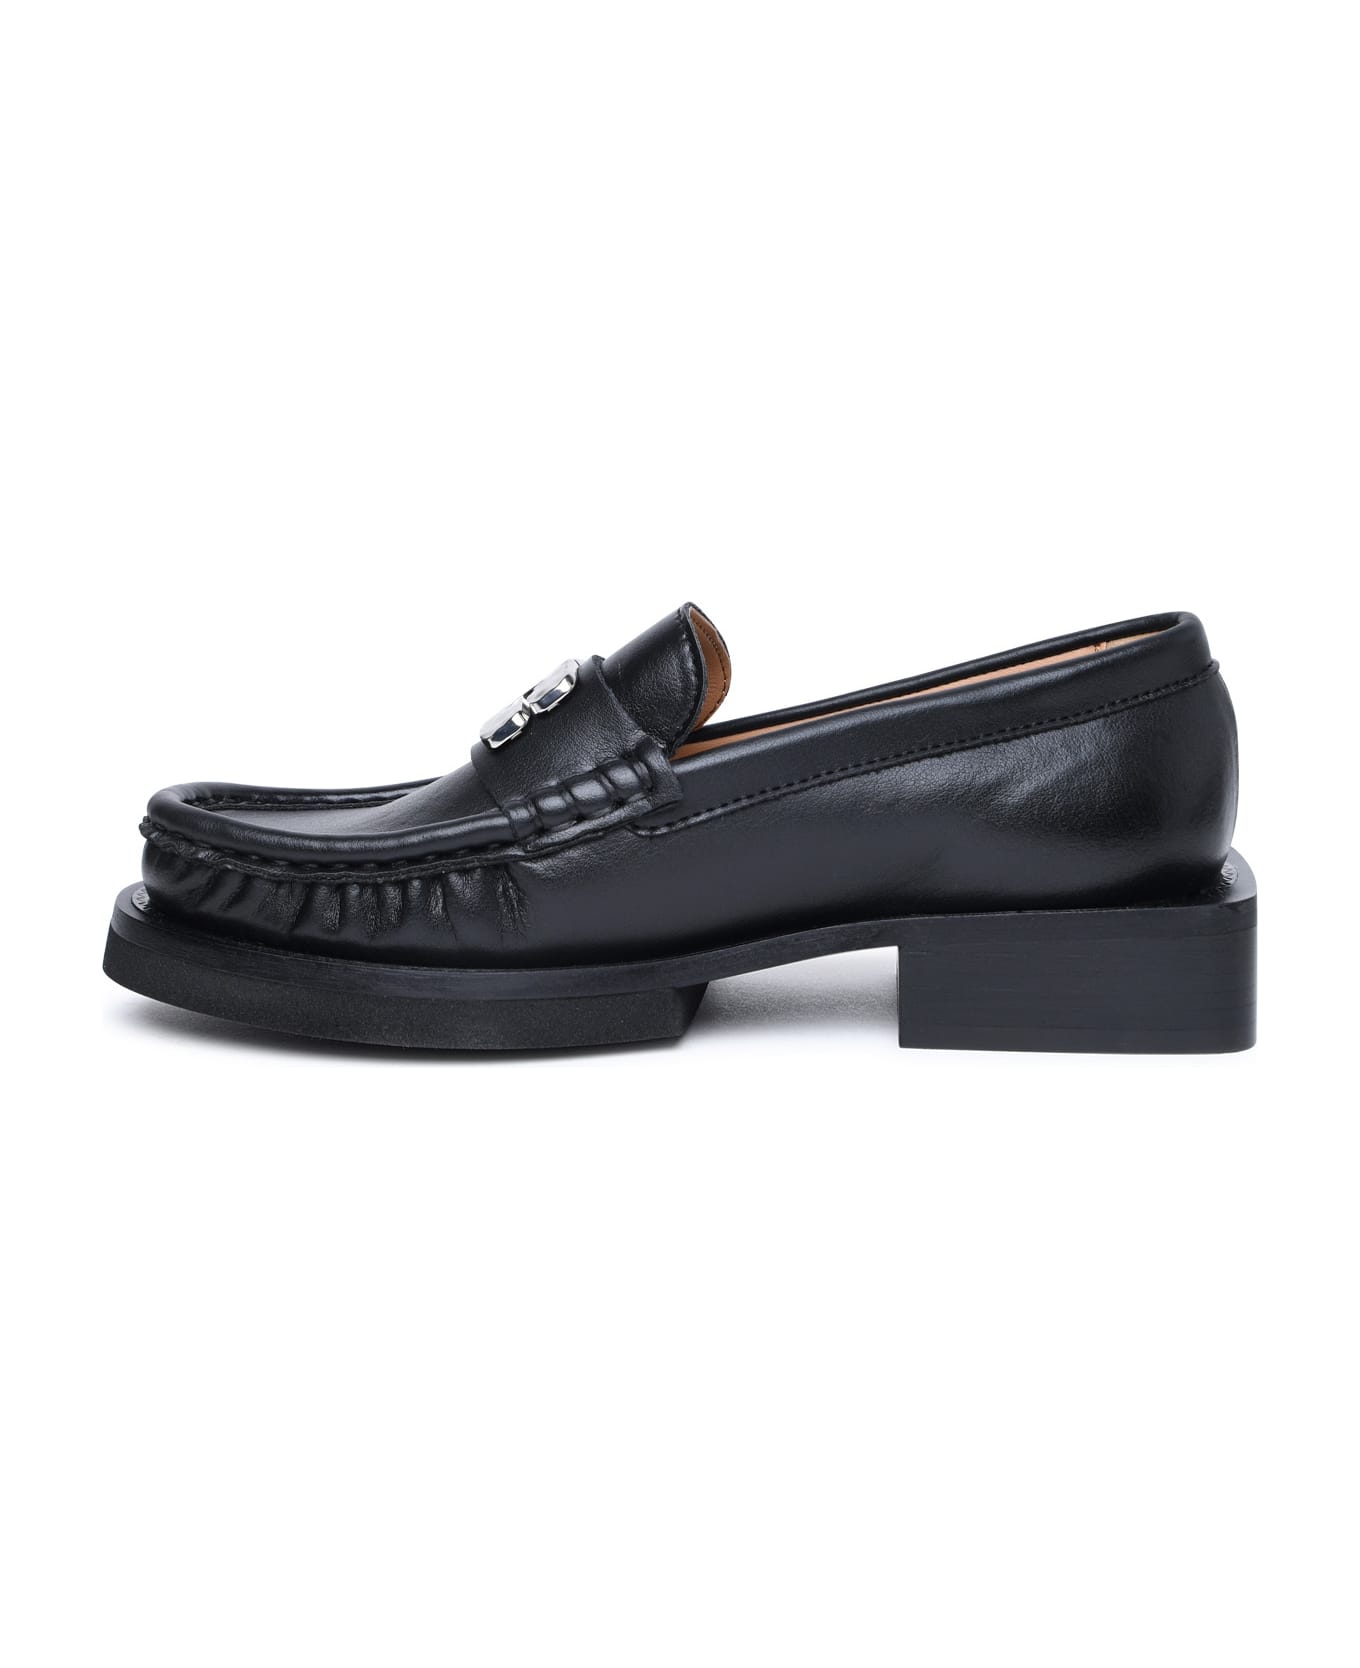 Ganni Black Leather Loafers - Black フラットシューズ